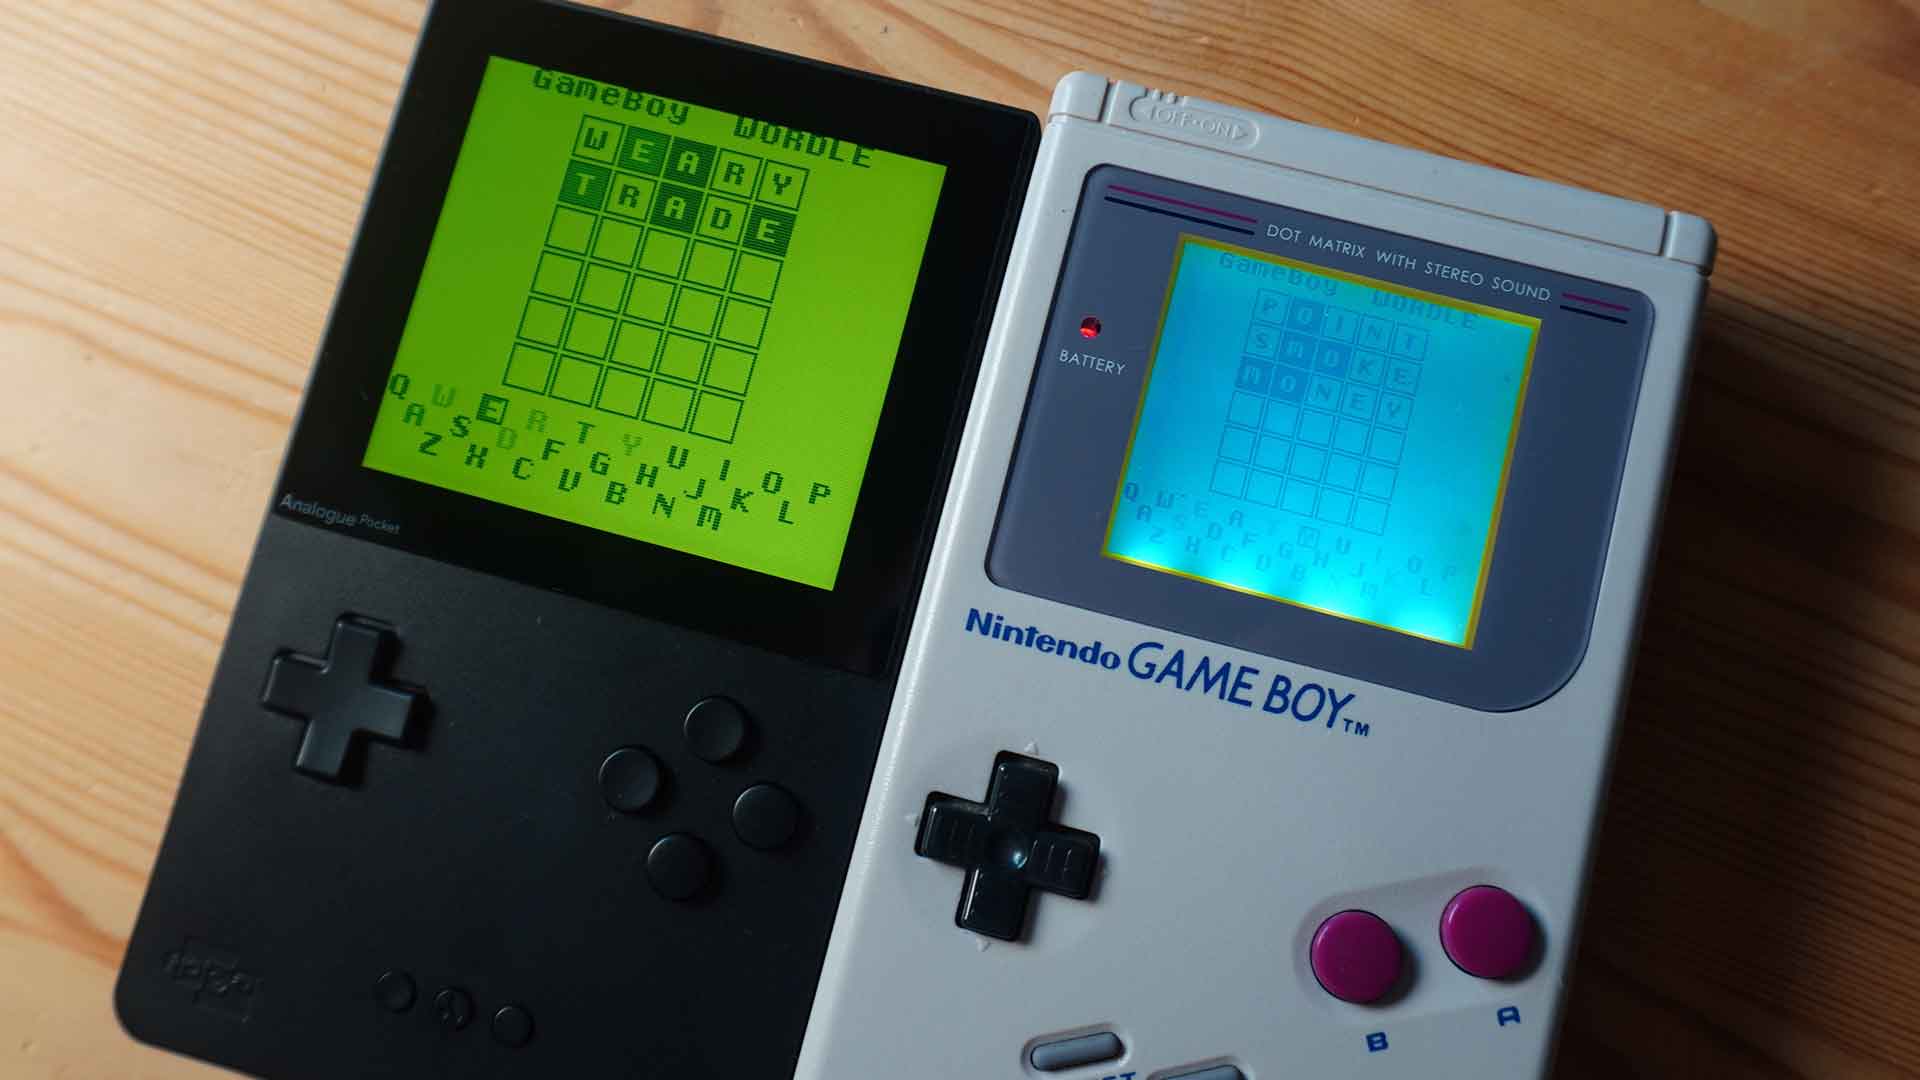 Beliebtes Wortspiel „Wordle“ auf dem Game Boy spielbar